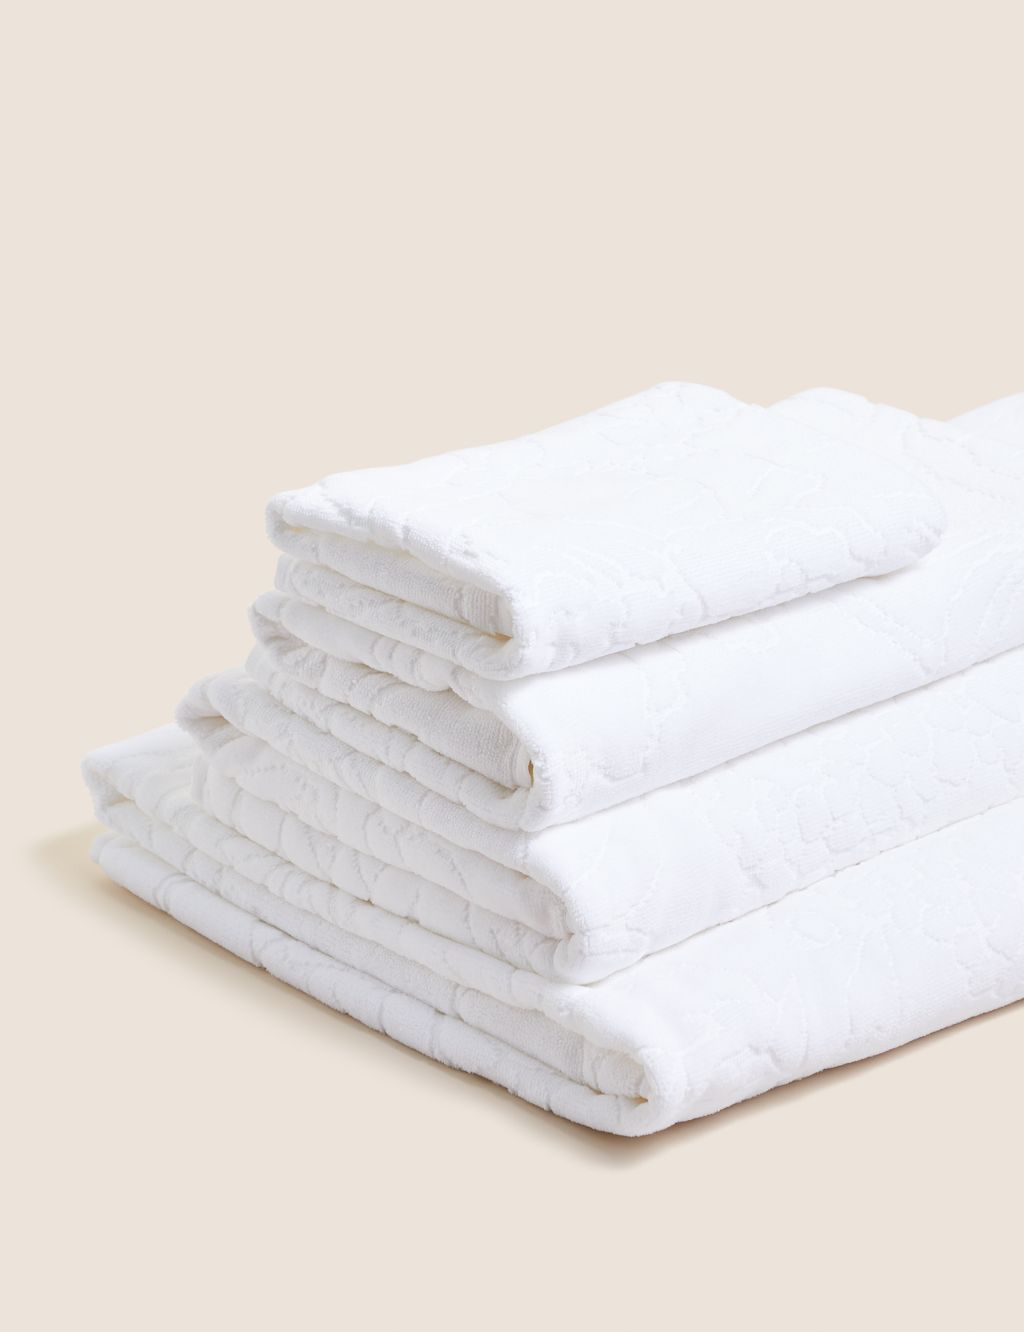 Pure Cotton Linear Floral Towel image 1